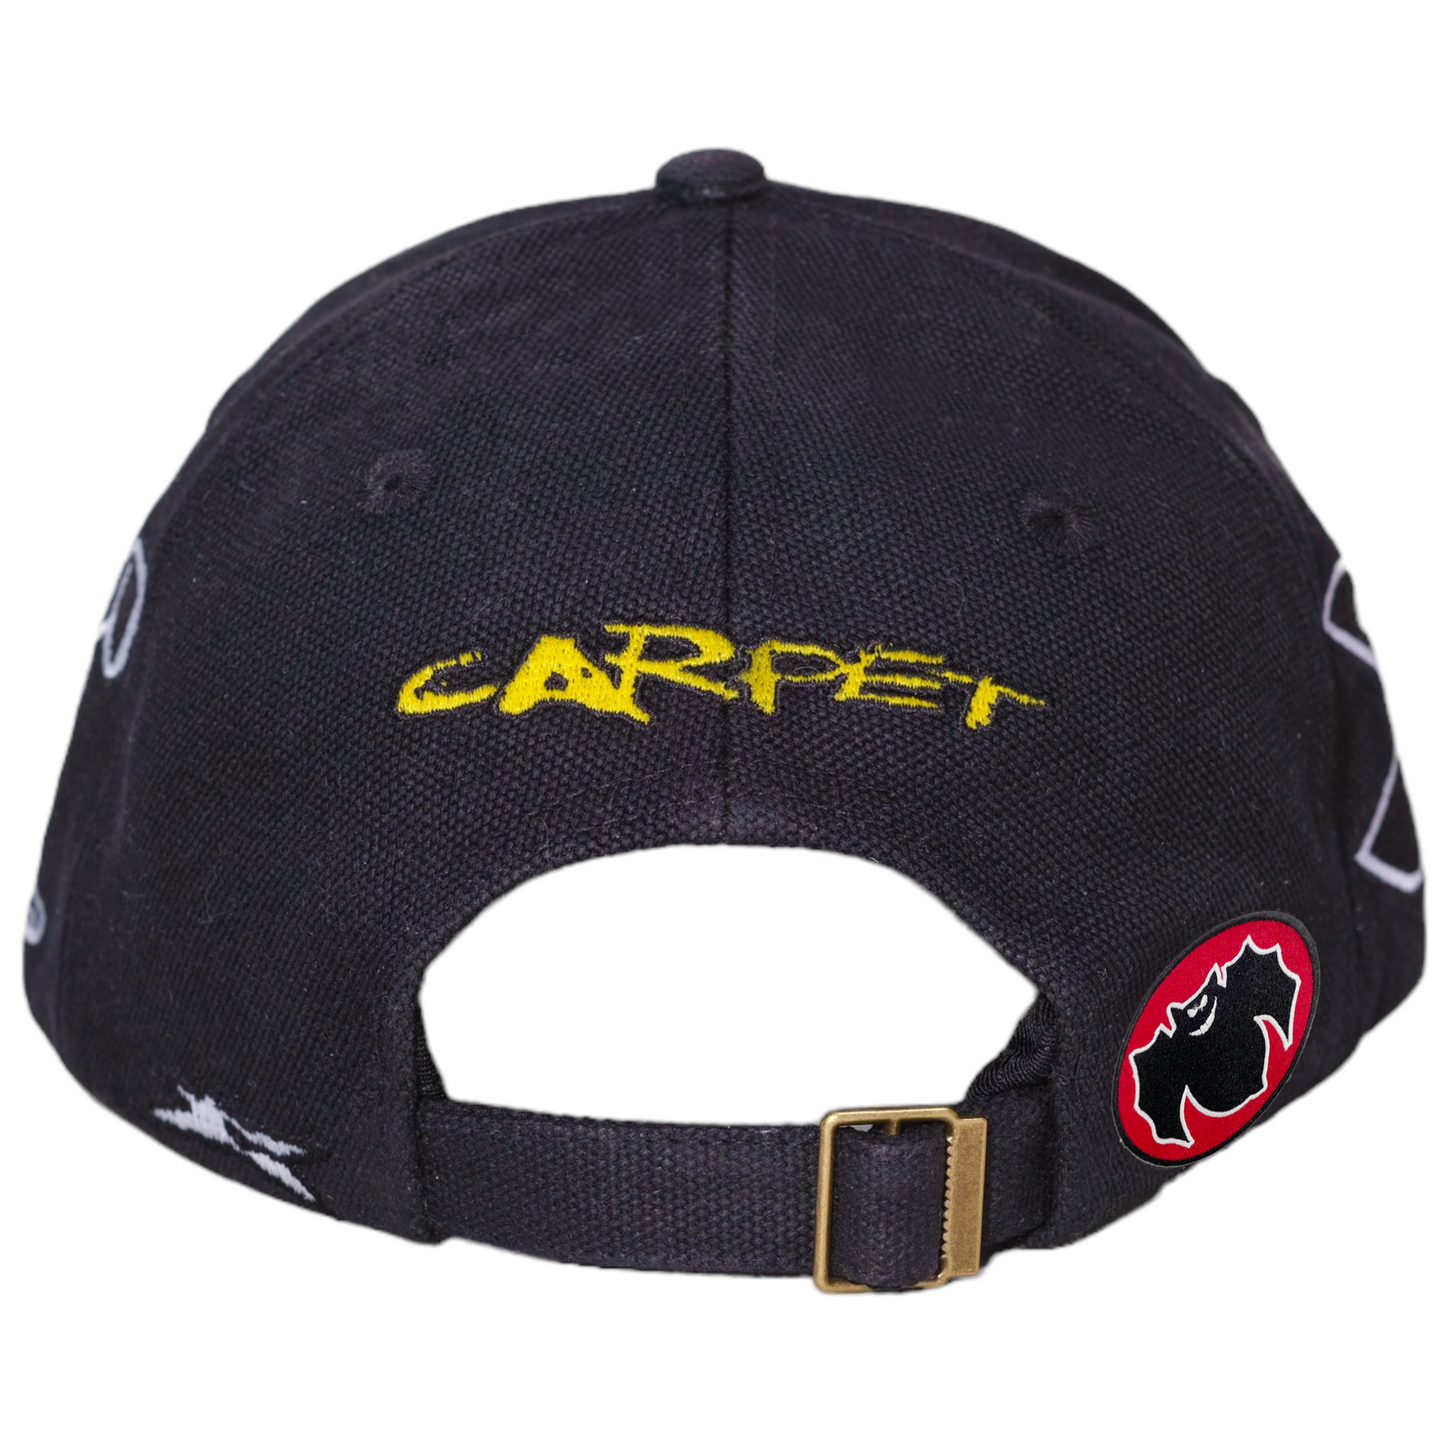 Racing Cap - Black